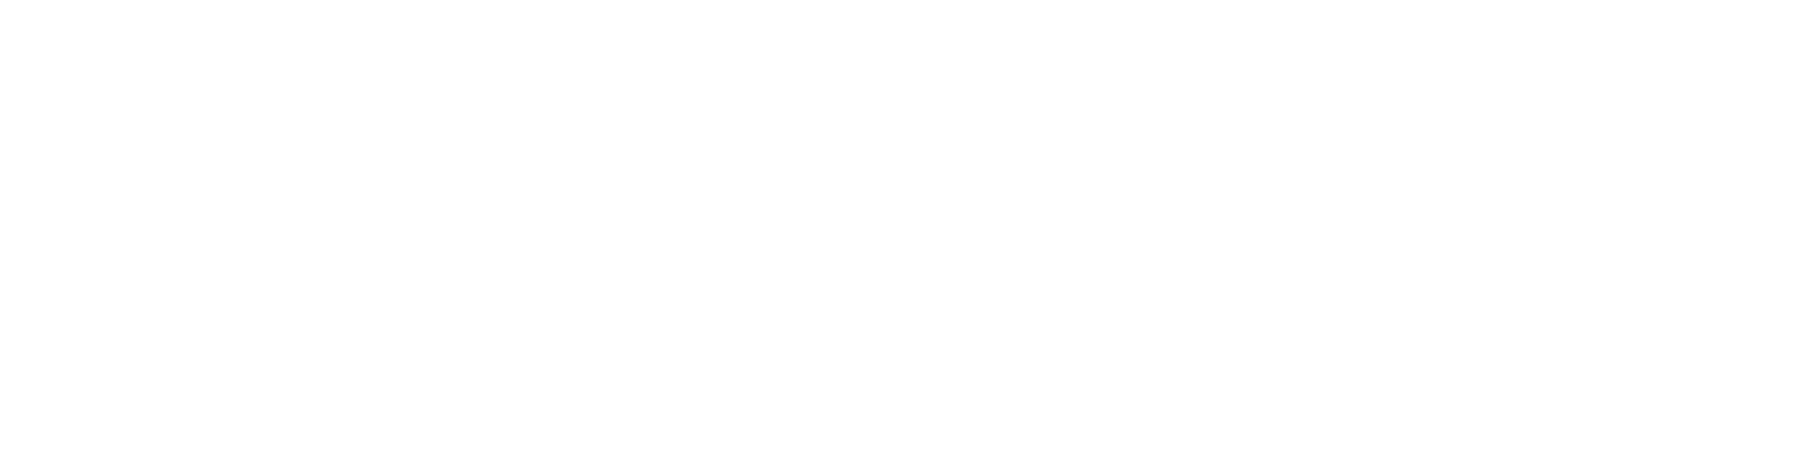 J_O x SANYOCOAT Vol.2